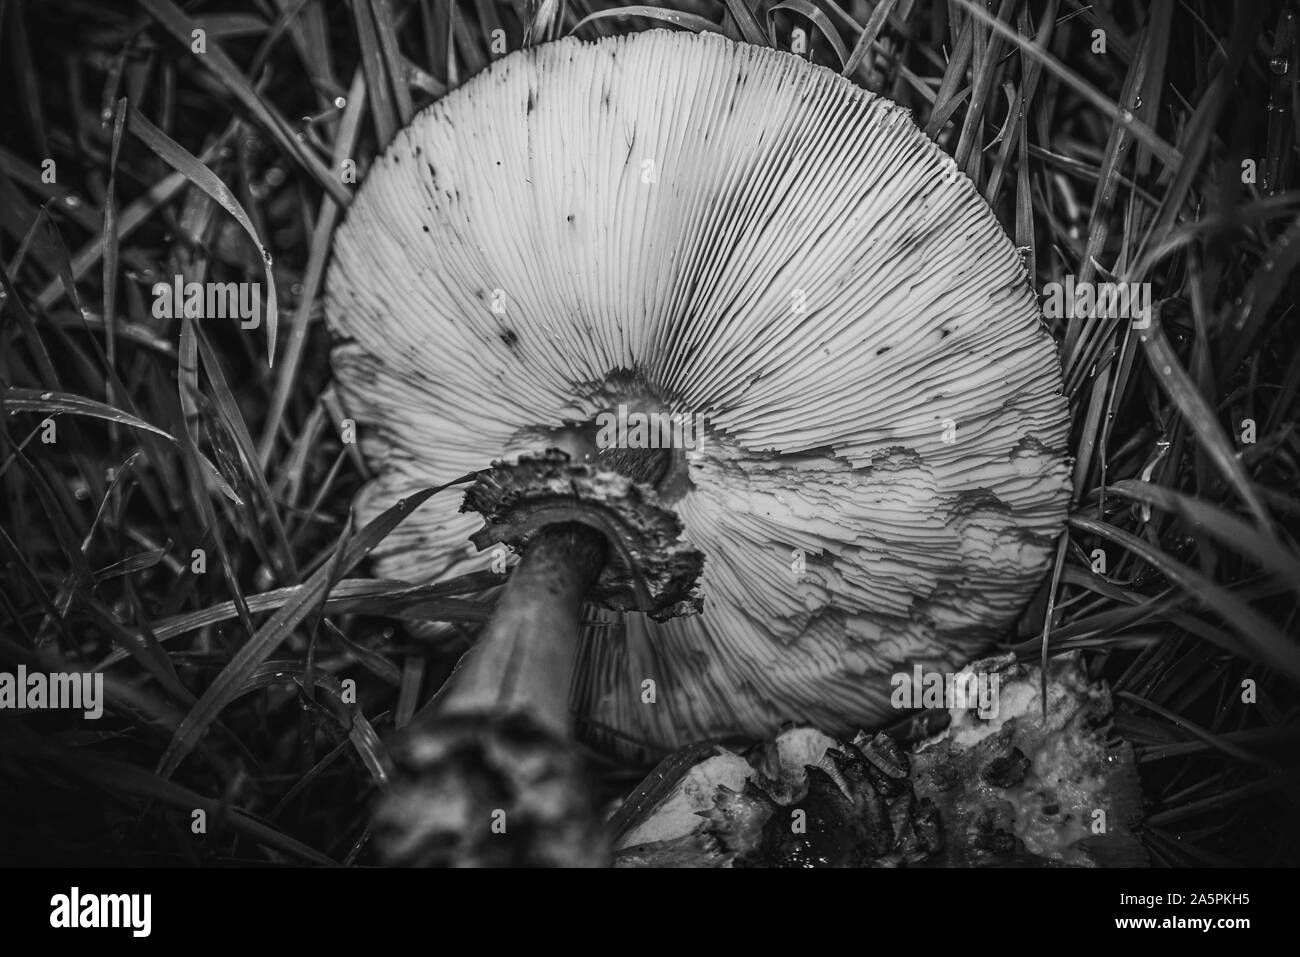 Funghi - fungo da giardino Foto Stock